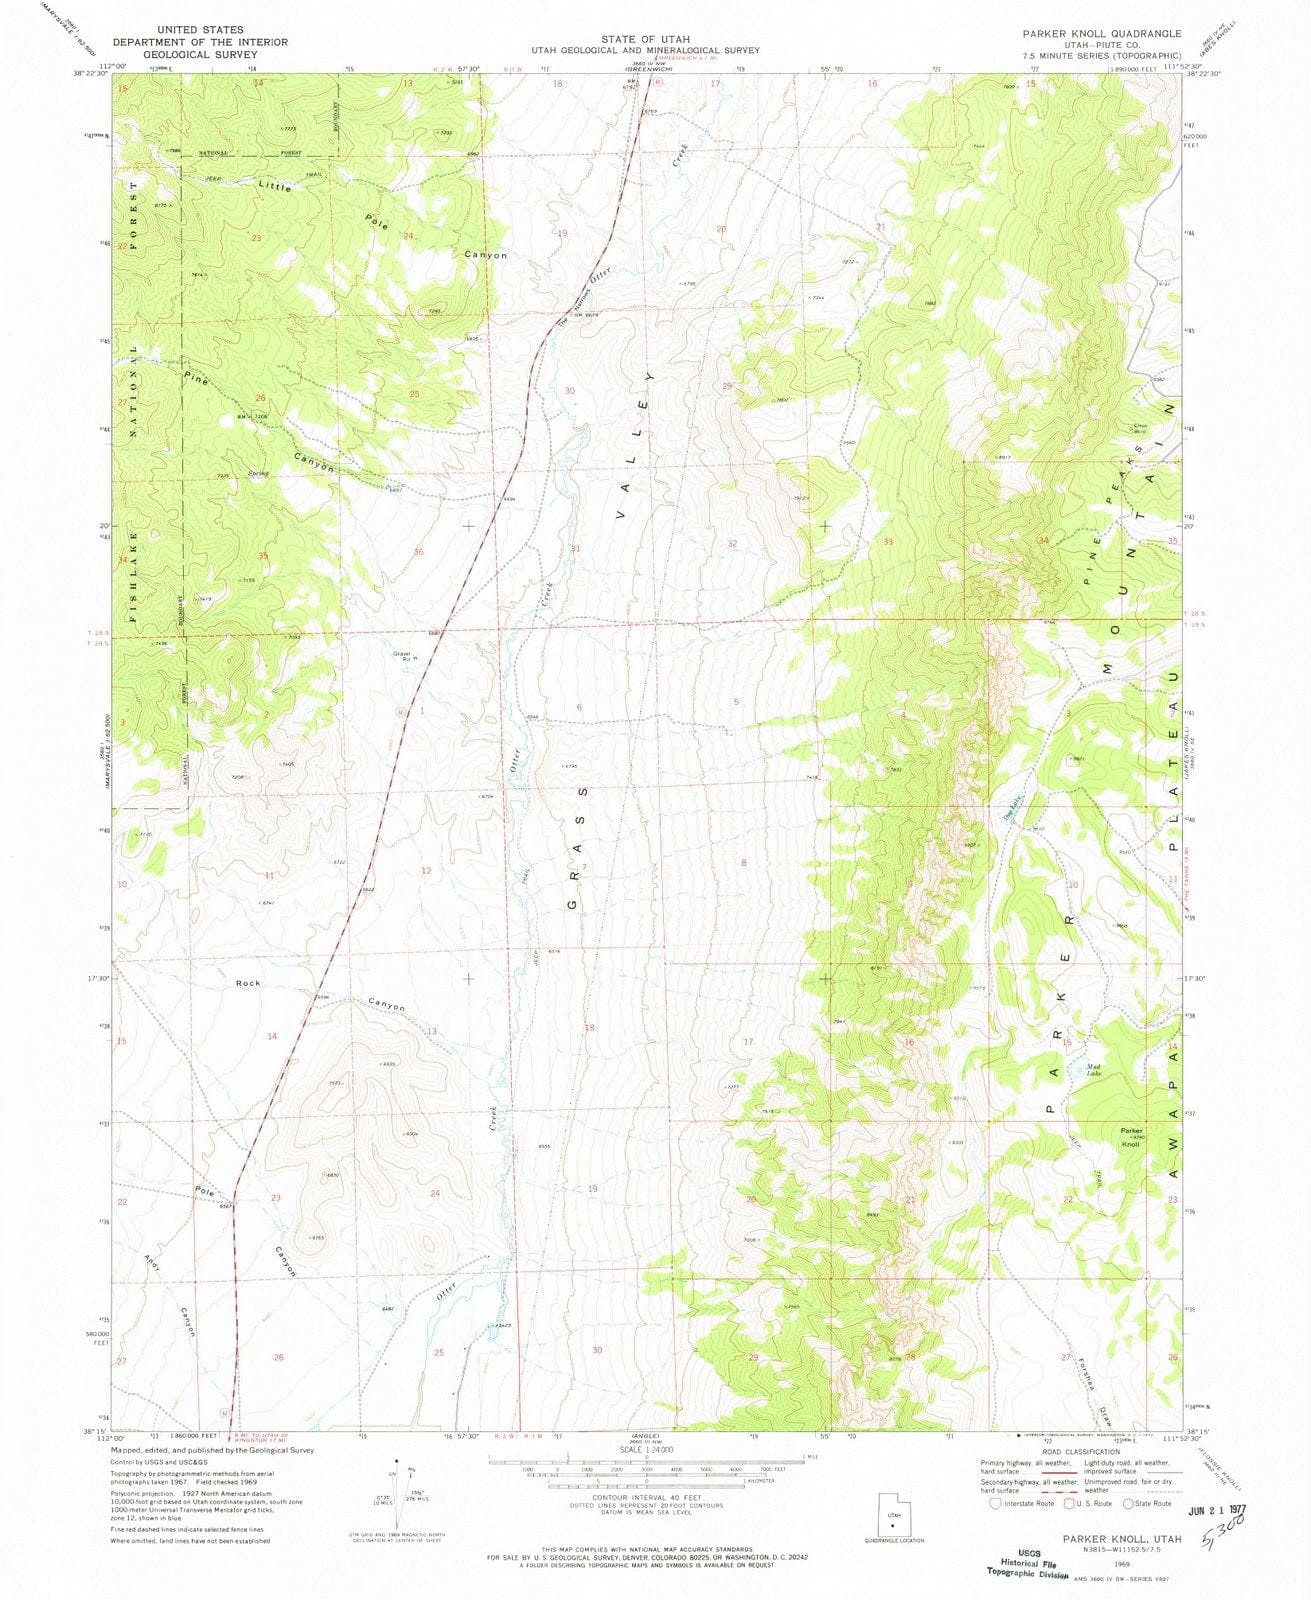 1969 Parker Knoll, UT - Utah - USGS Topographic Map